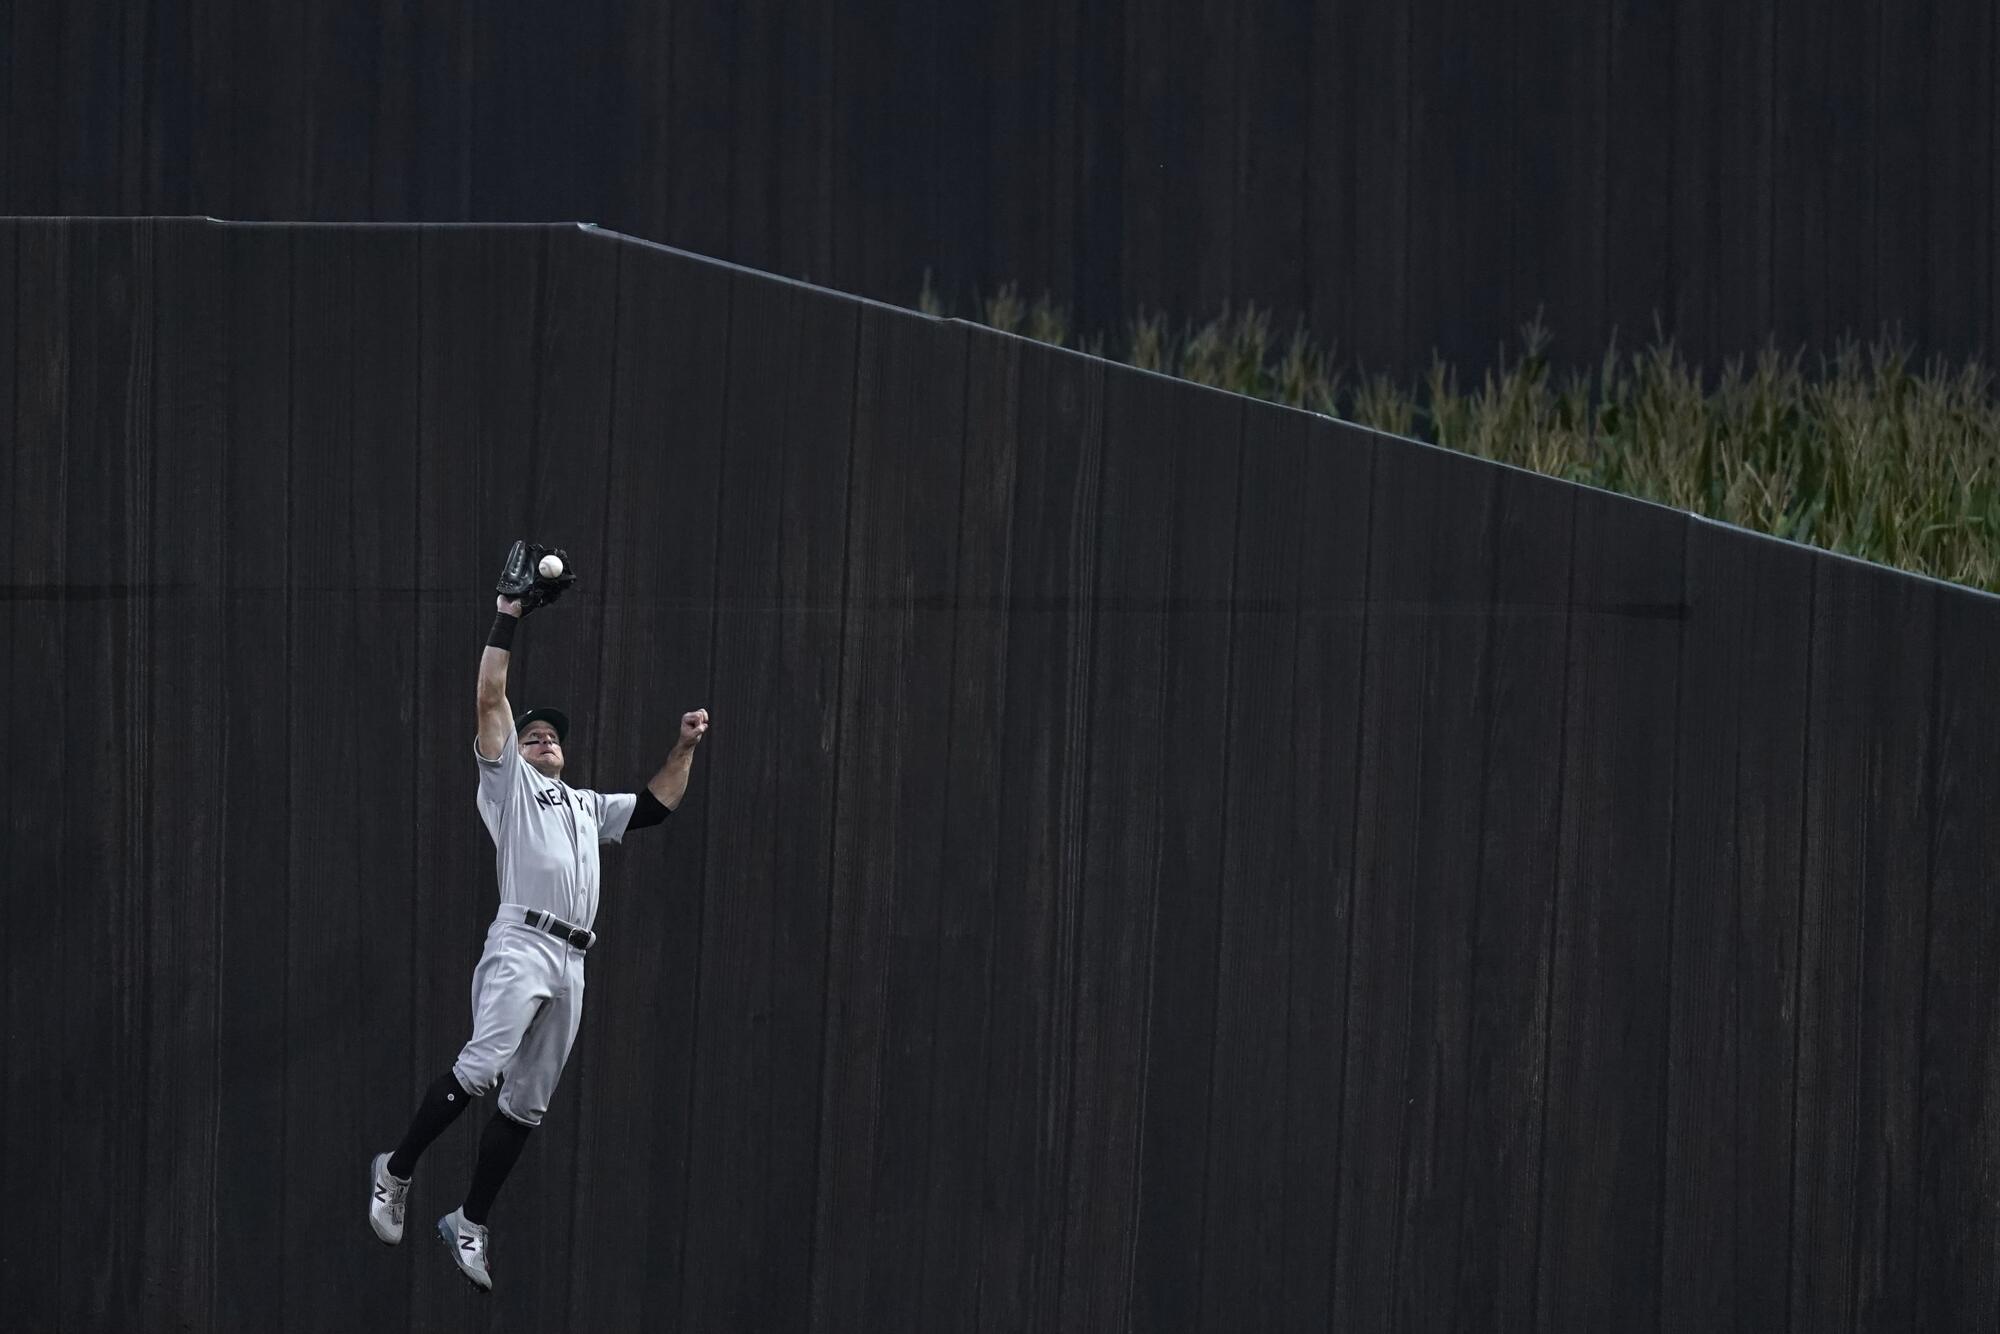 Yankees center fielder Brett Gardner jumps to catch a fly ball.